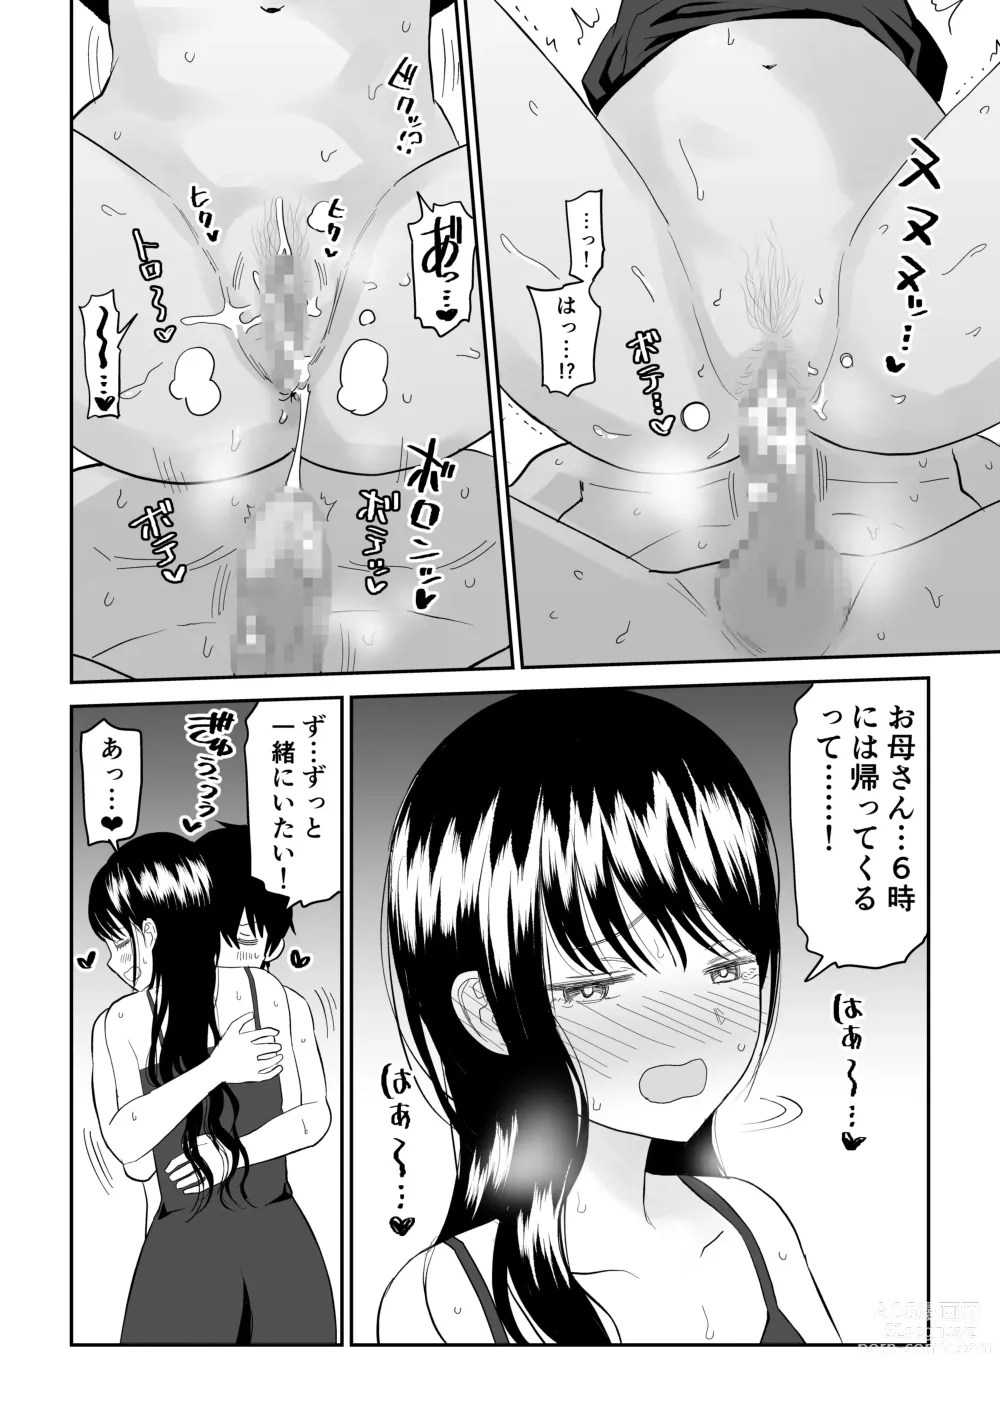 Page 44 of doujinshi Cool-Dere JK 3 Shitsurakuen Hen